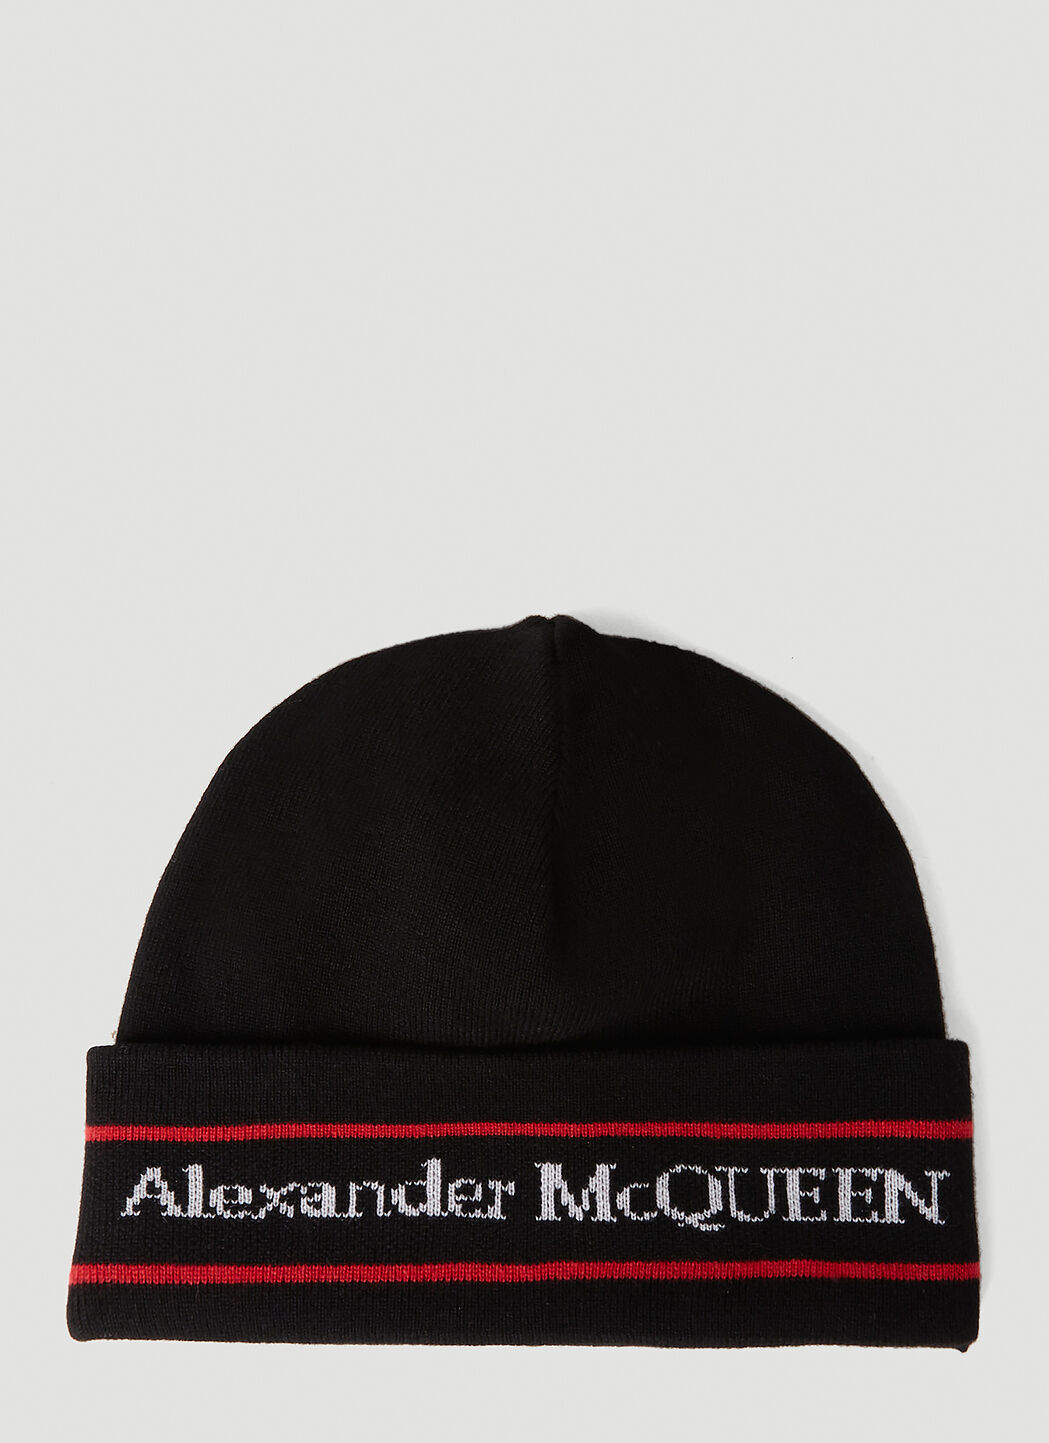 Alexander McQueen 로고 비니 햇 블랙 amq0152002